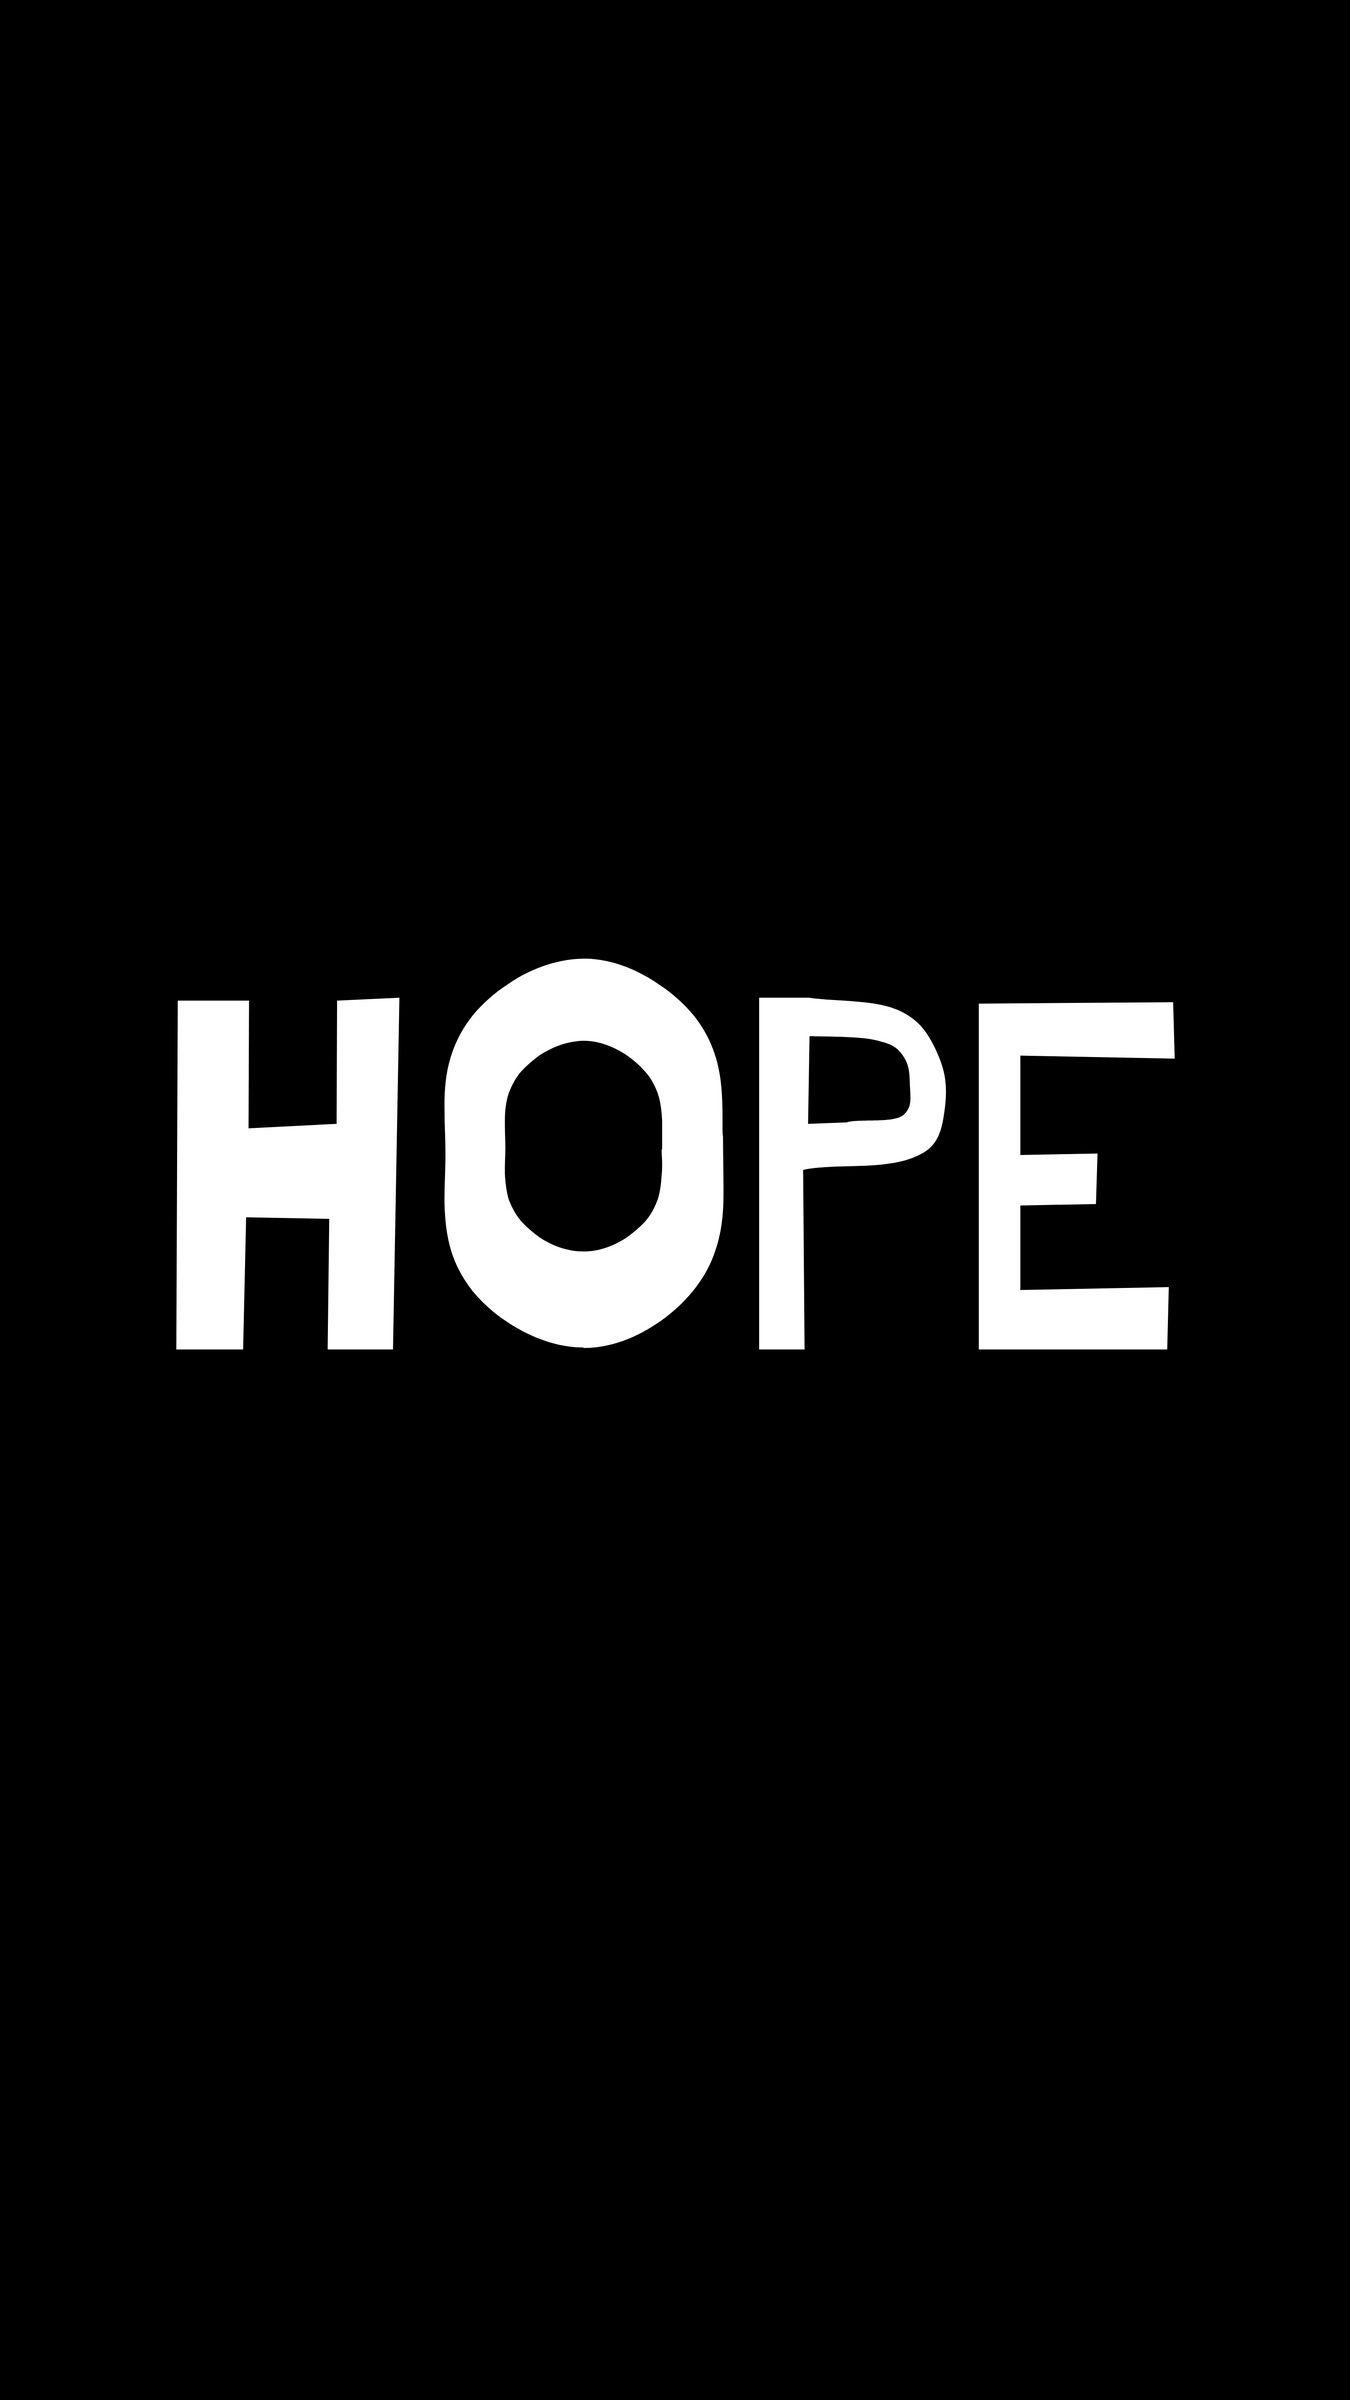 HD hope name wallpapers | Peakpx